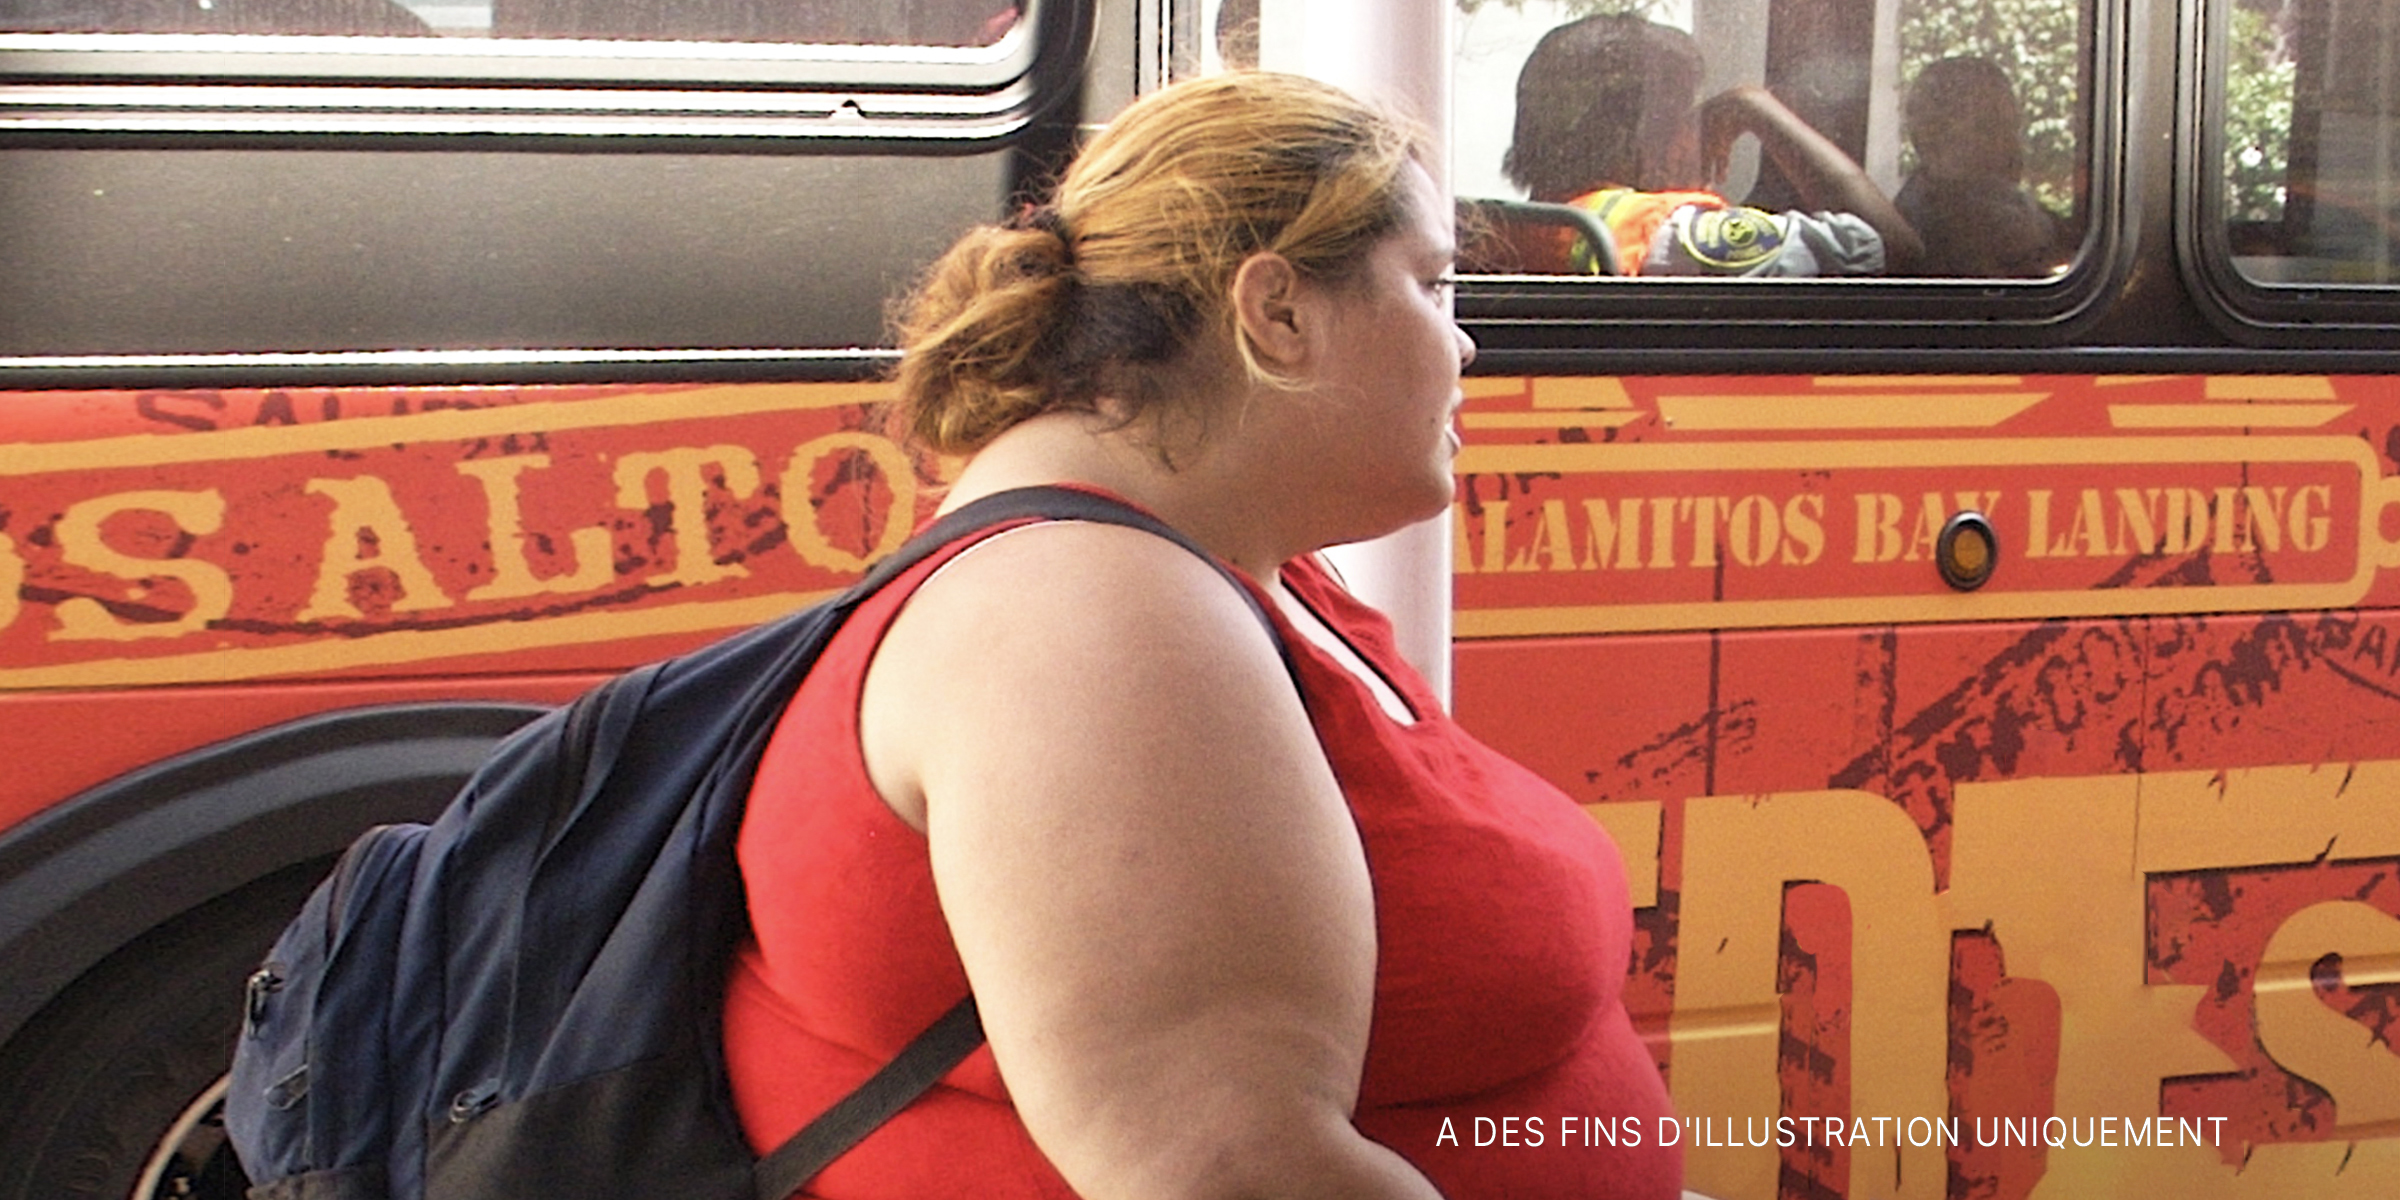 Femme en surpoids marchant près d'un bus | Source : Flickr / colros (CC BY 2.0)